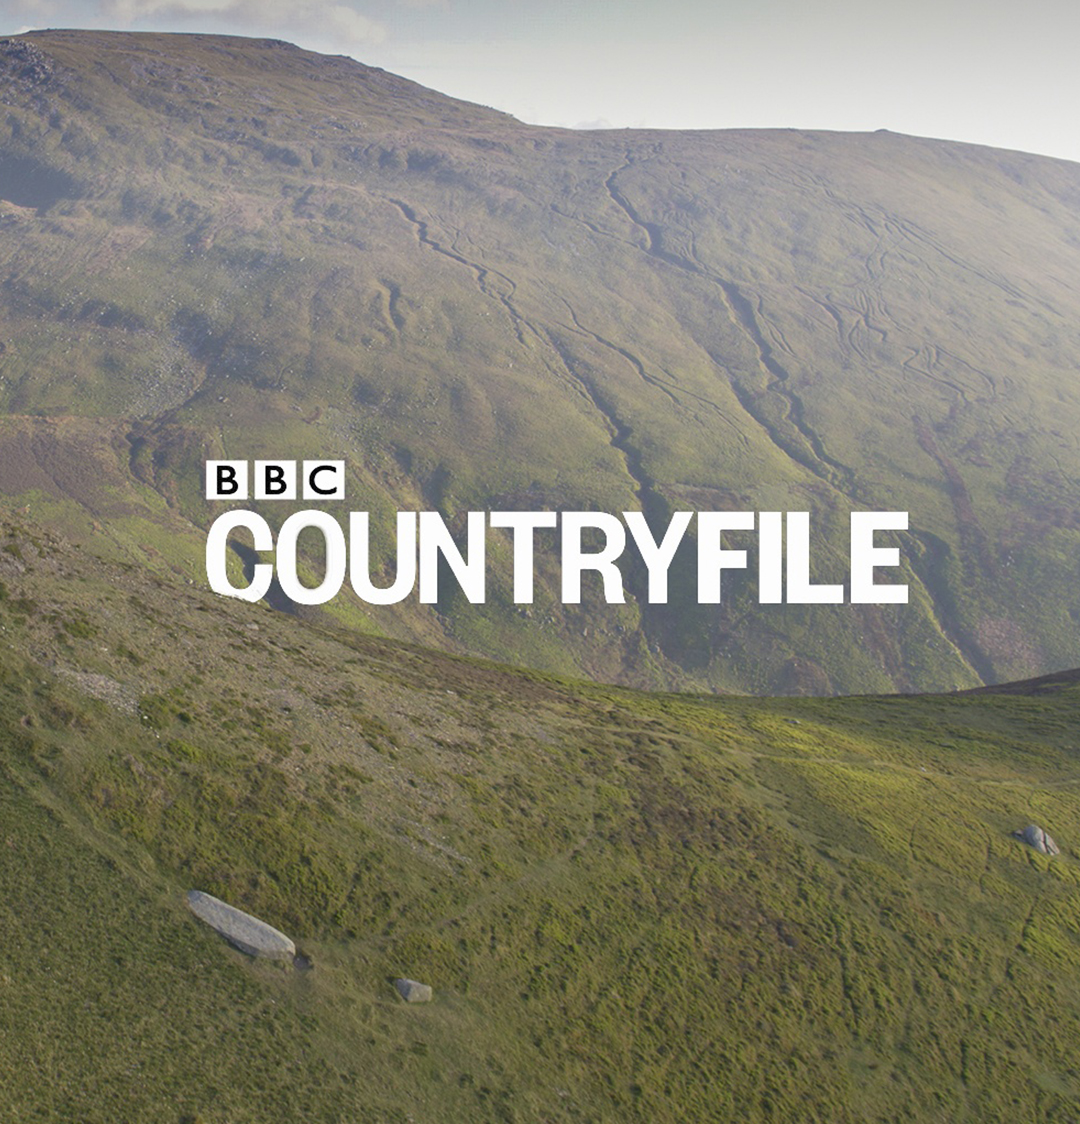 BBC Countryfile logo